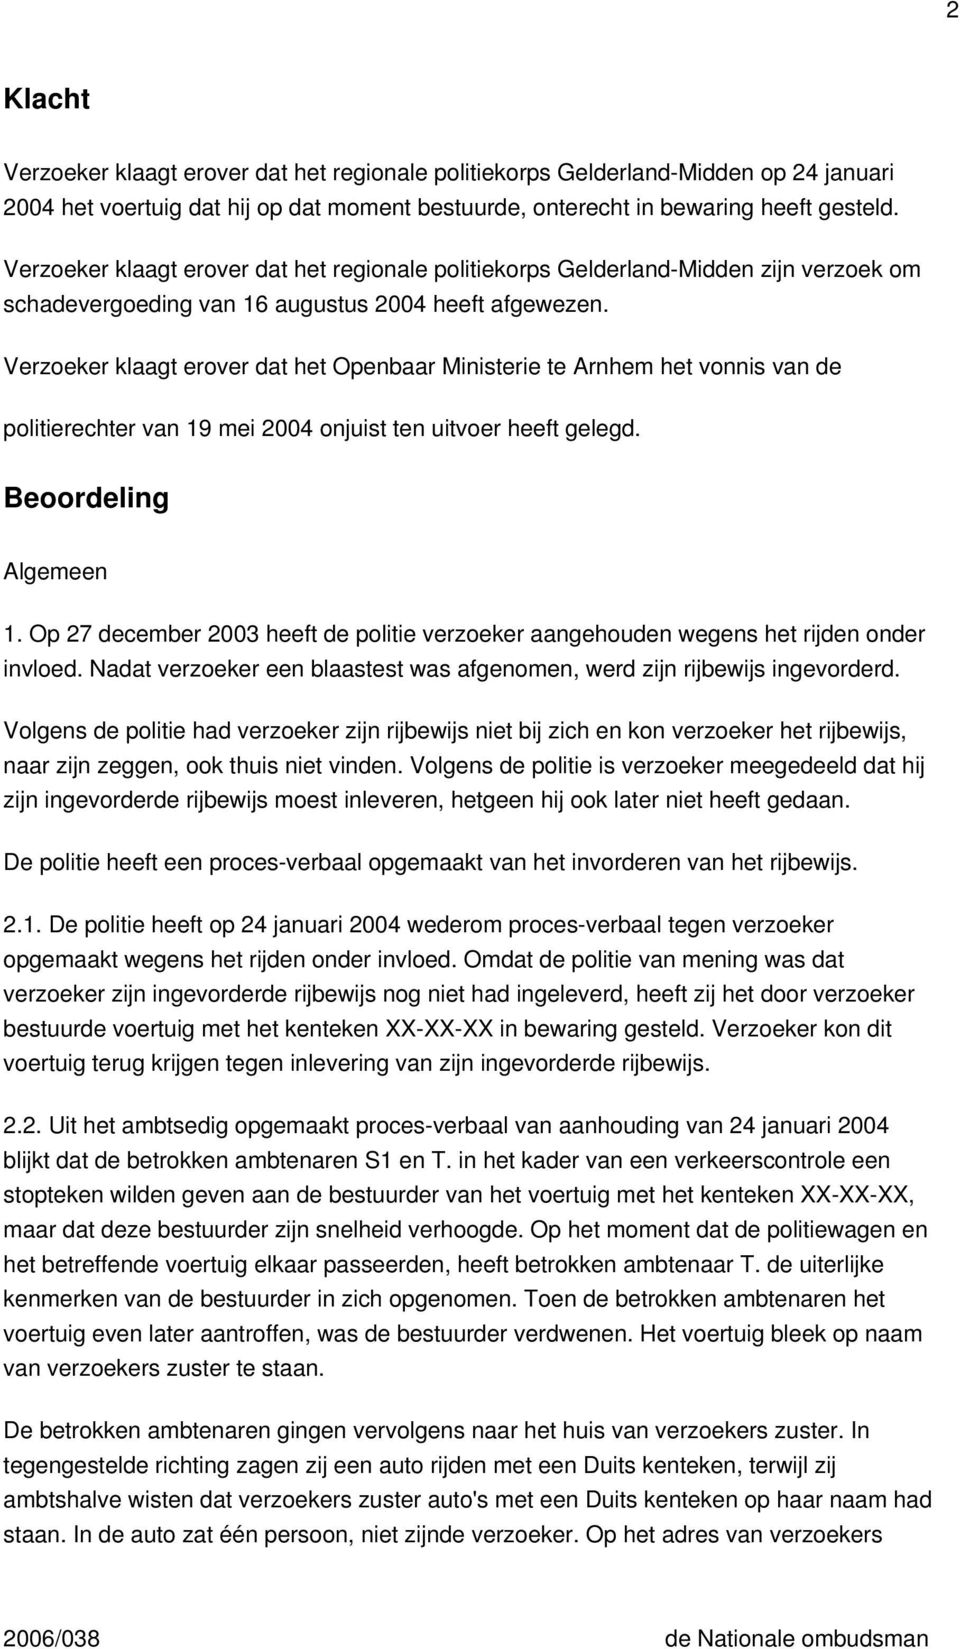 Verzoeker klaagt erover dat het Openbaar Ministerie te Arnhem het vonnis van de politierechter van 19 mei 2004 onjuist ten uitvoer heeft gelegd. Beoordeling Algemeen 1.